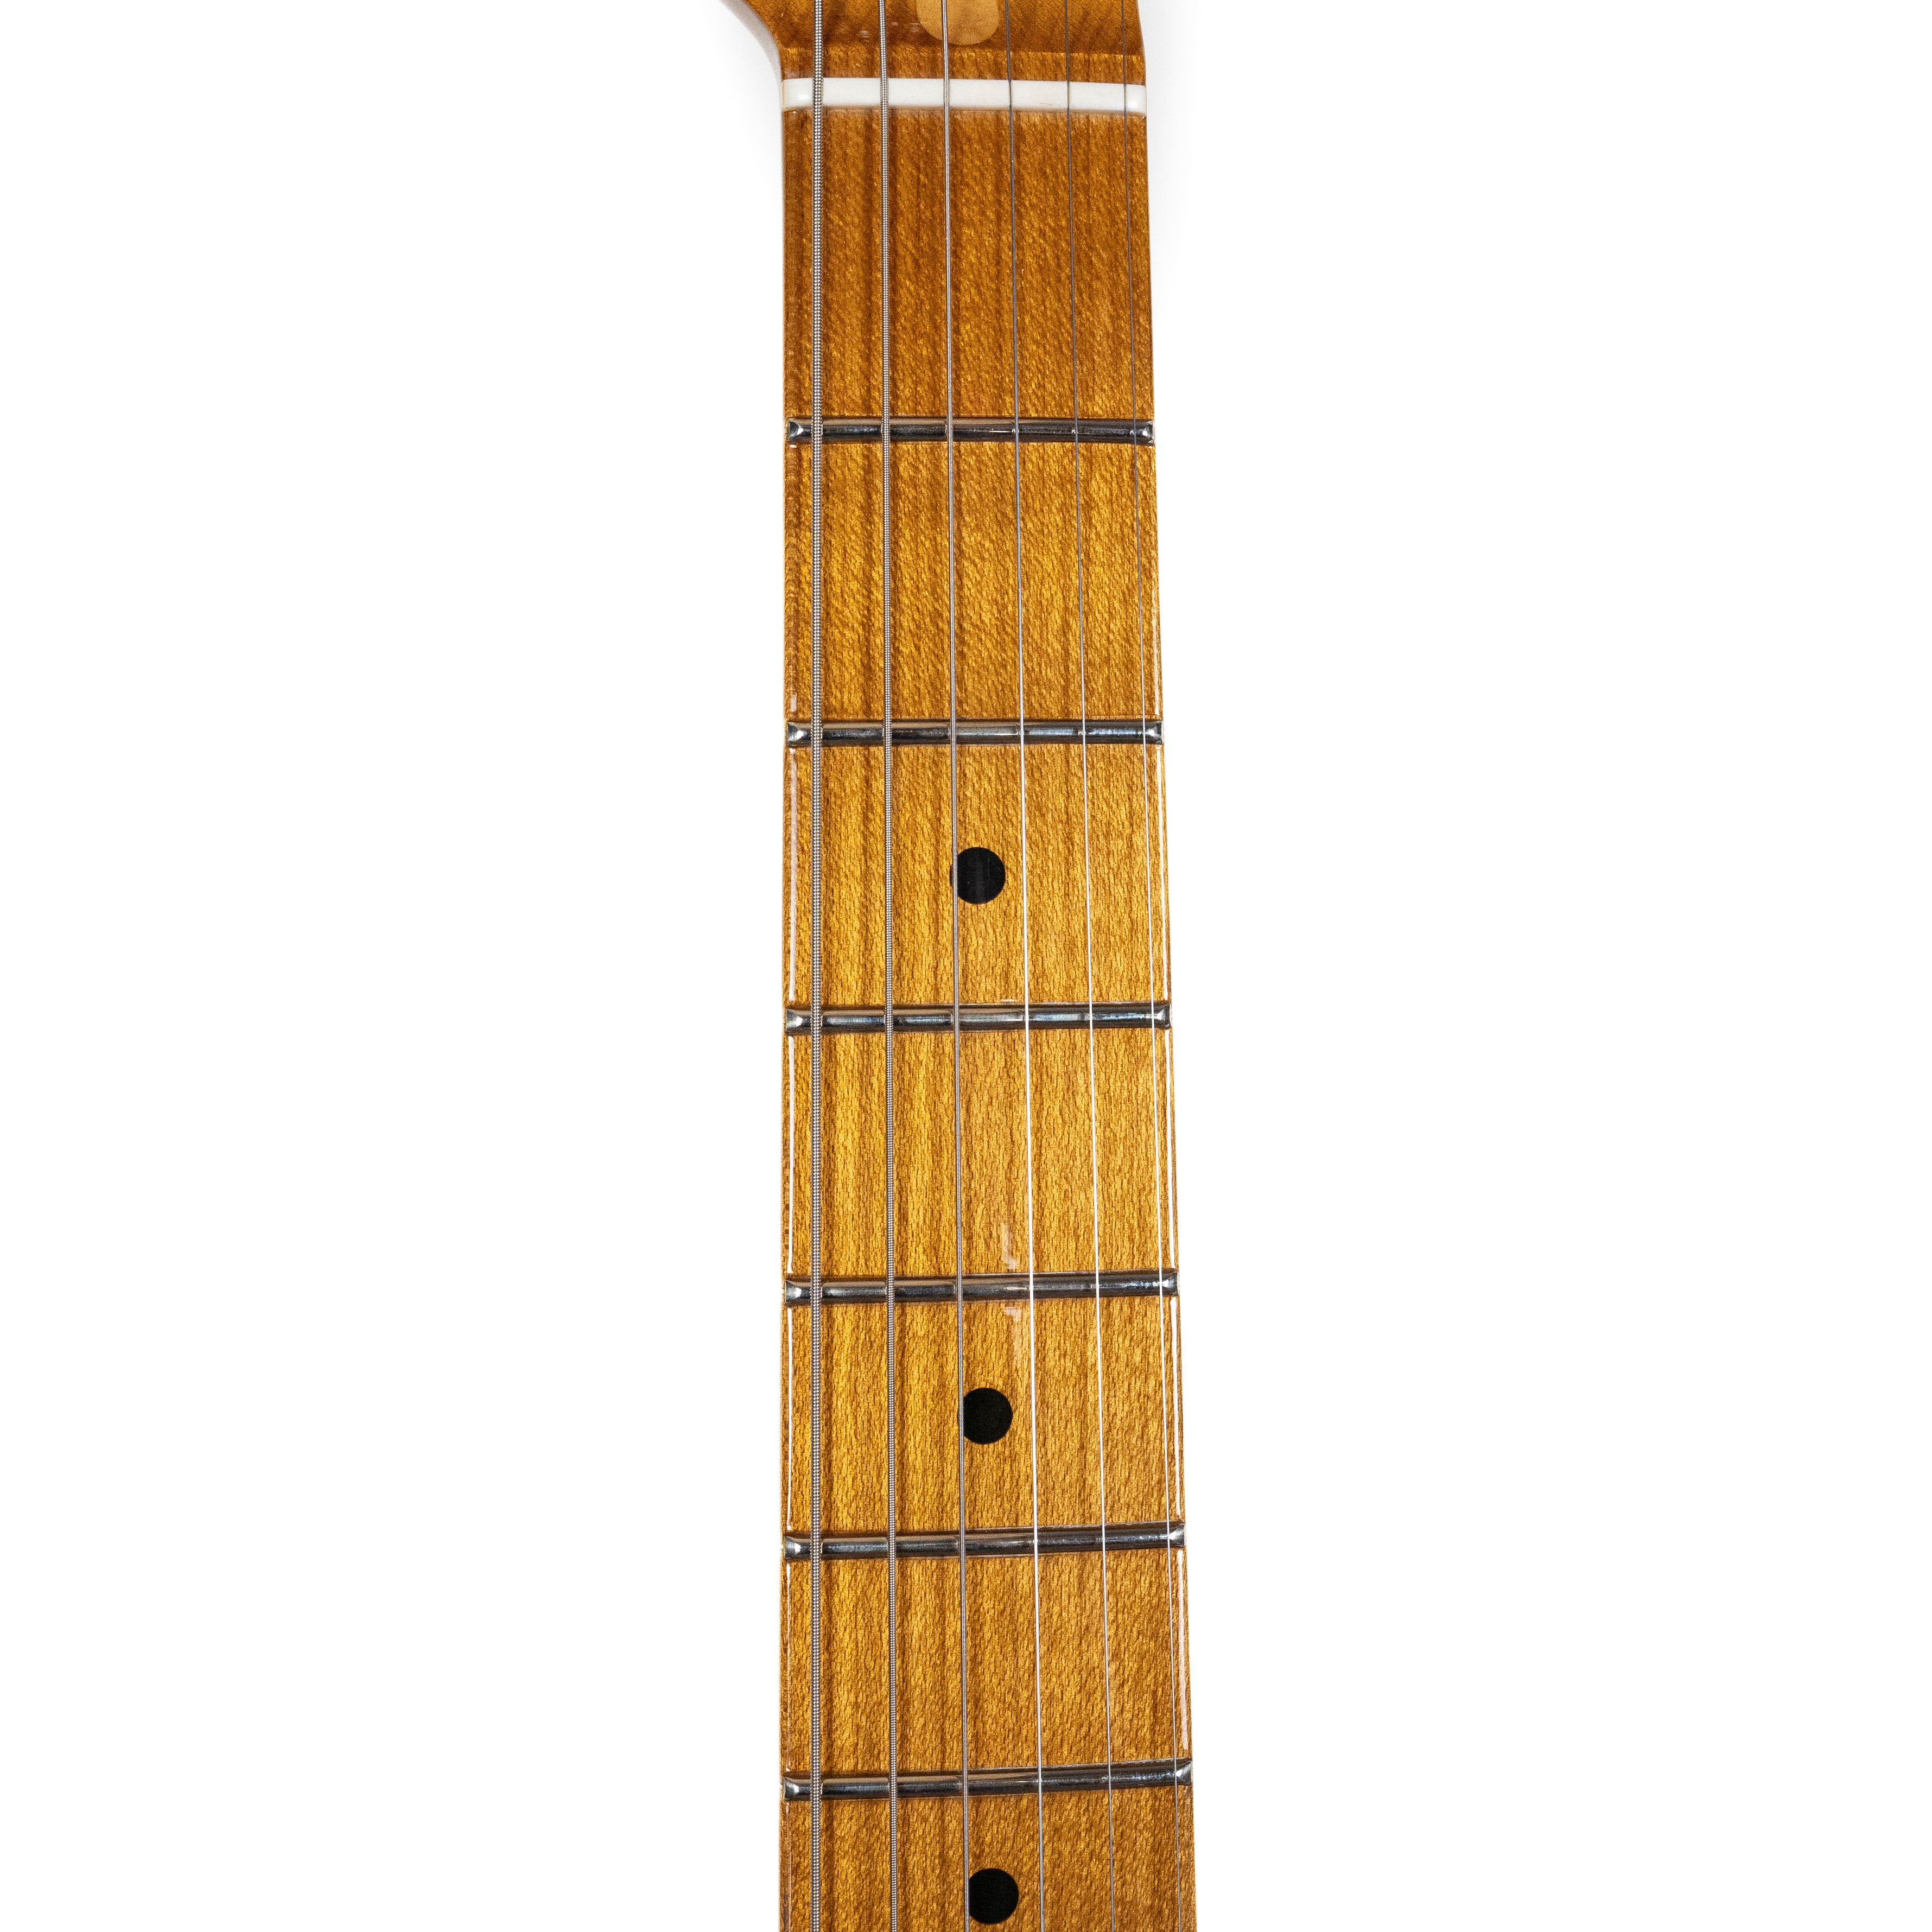 Fender Custom Shop 1955 Tele Sunburst